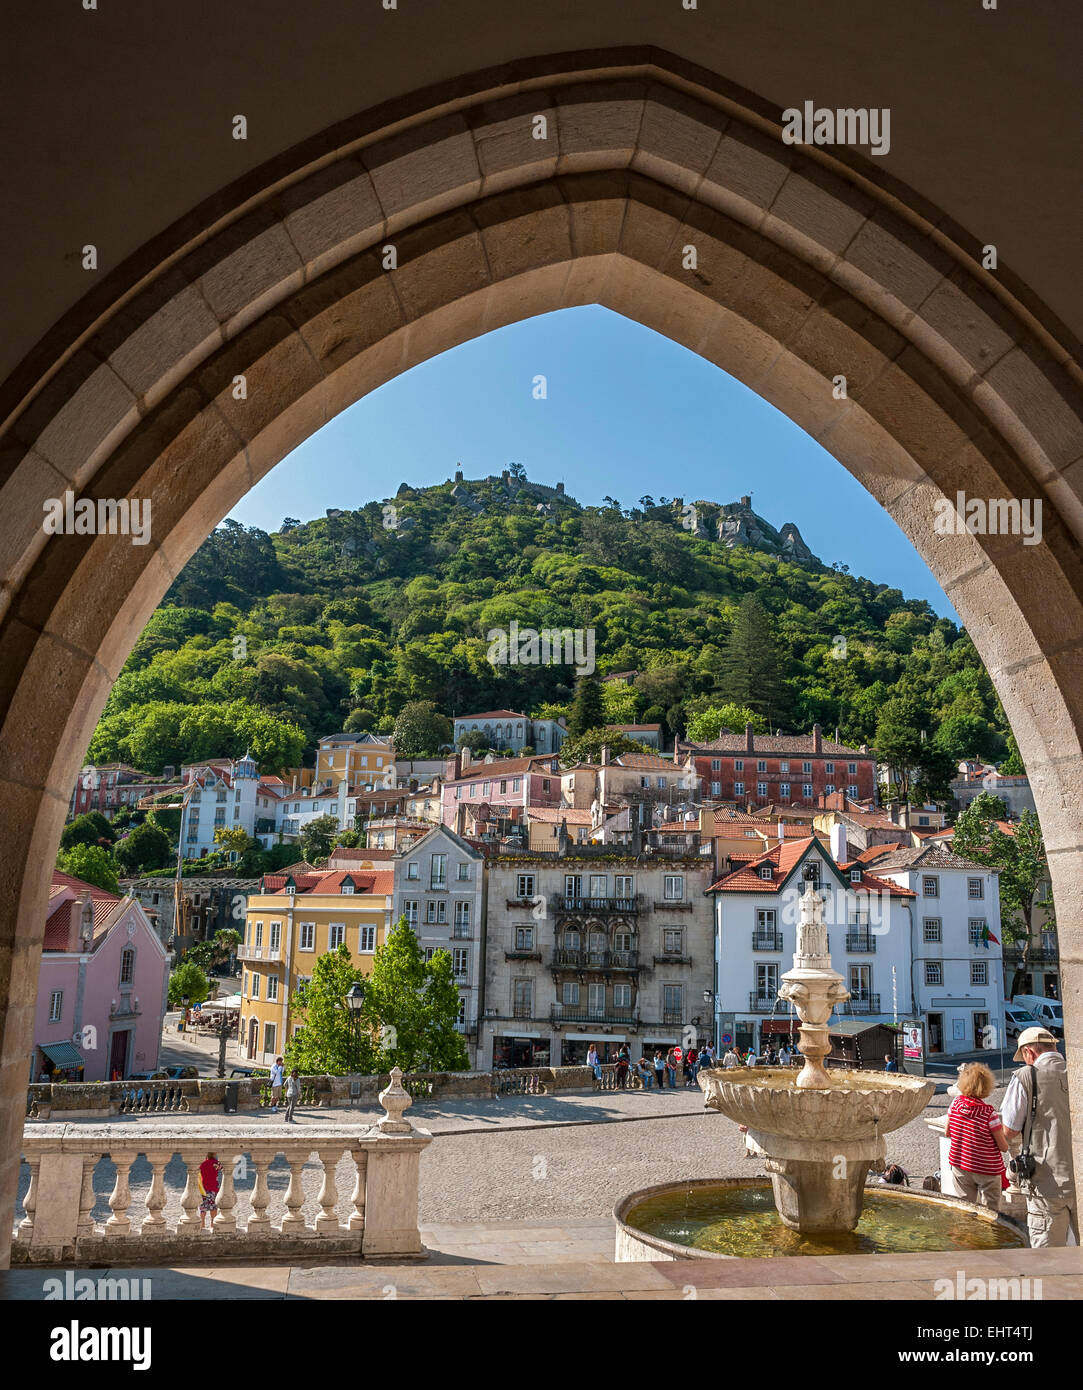 Portugal , Sintra . Vista de la ciudad a través del arco conopial entrada principal del palacio real . Fuente Foto de stock